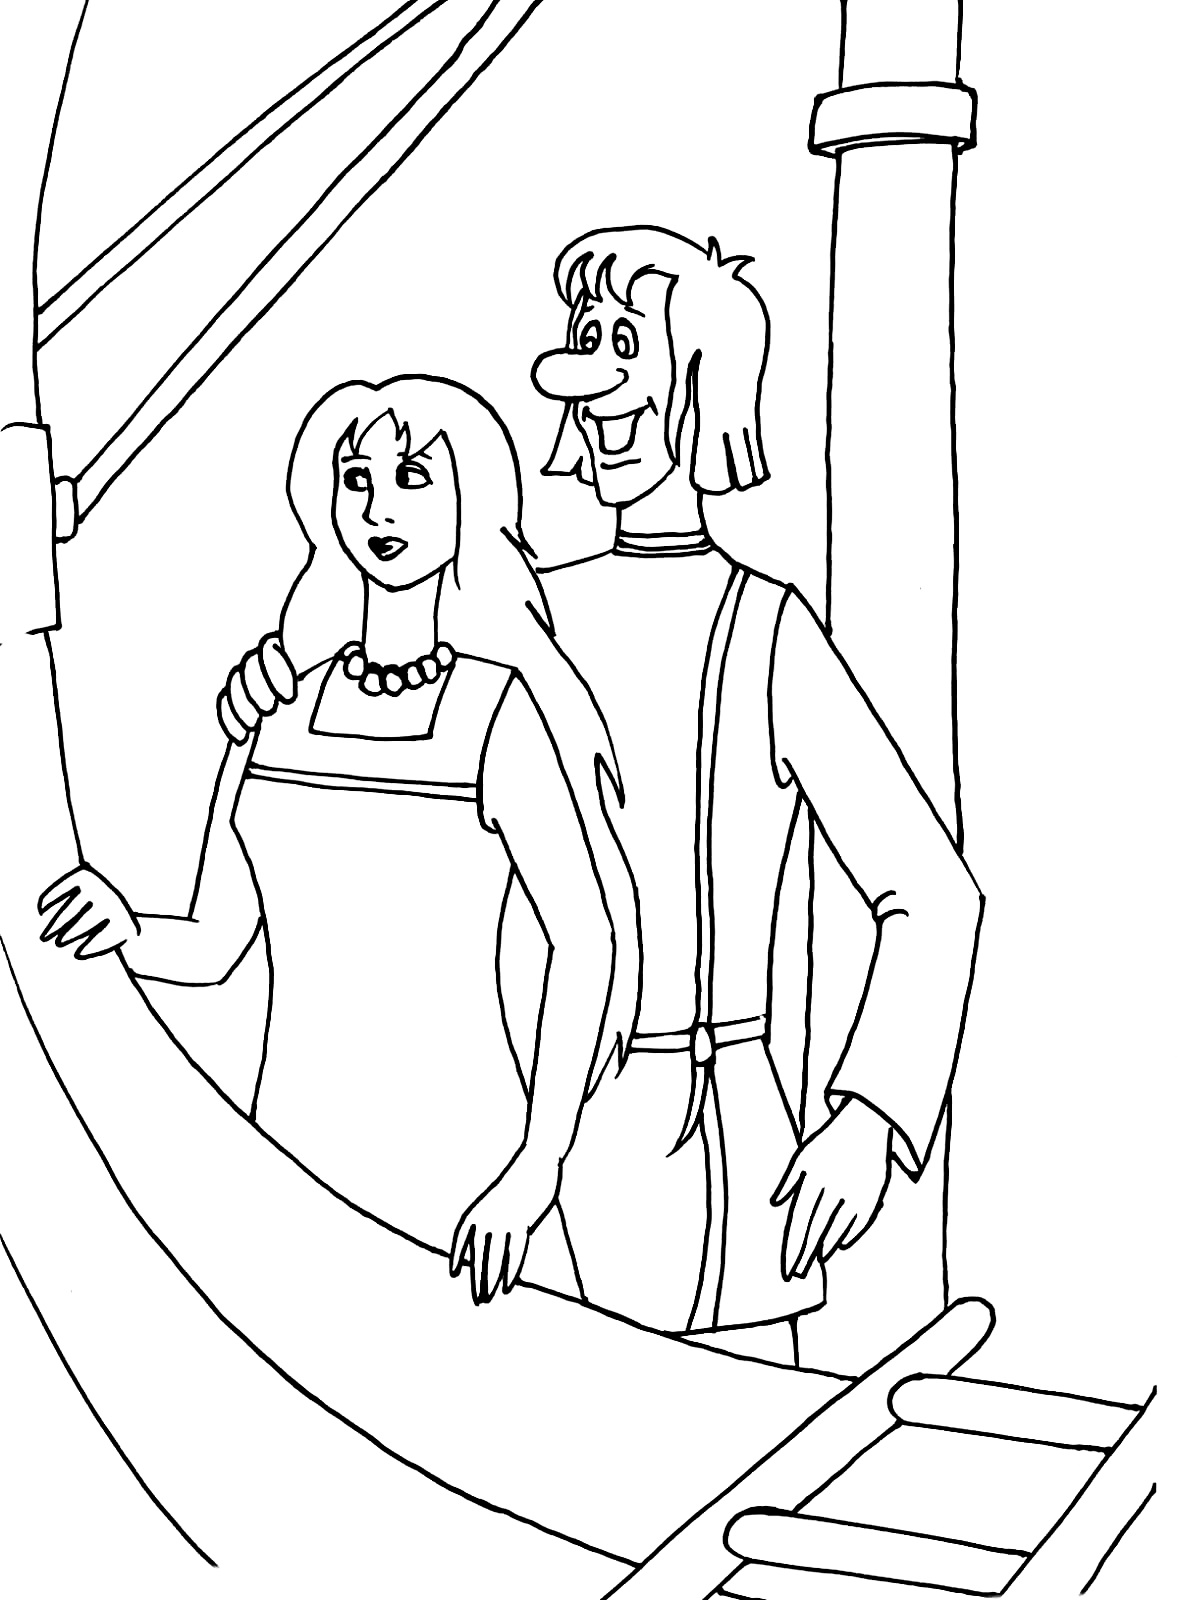 Царевна Забава и Иван вместе стоят на корабле